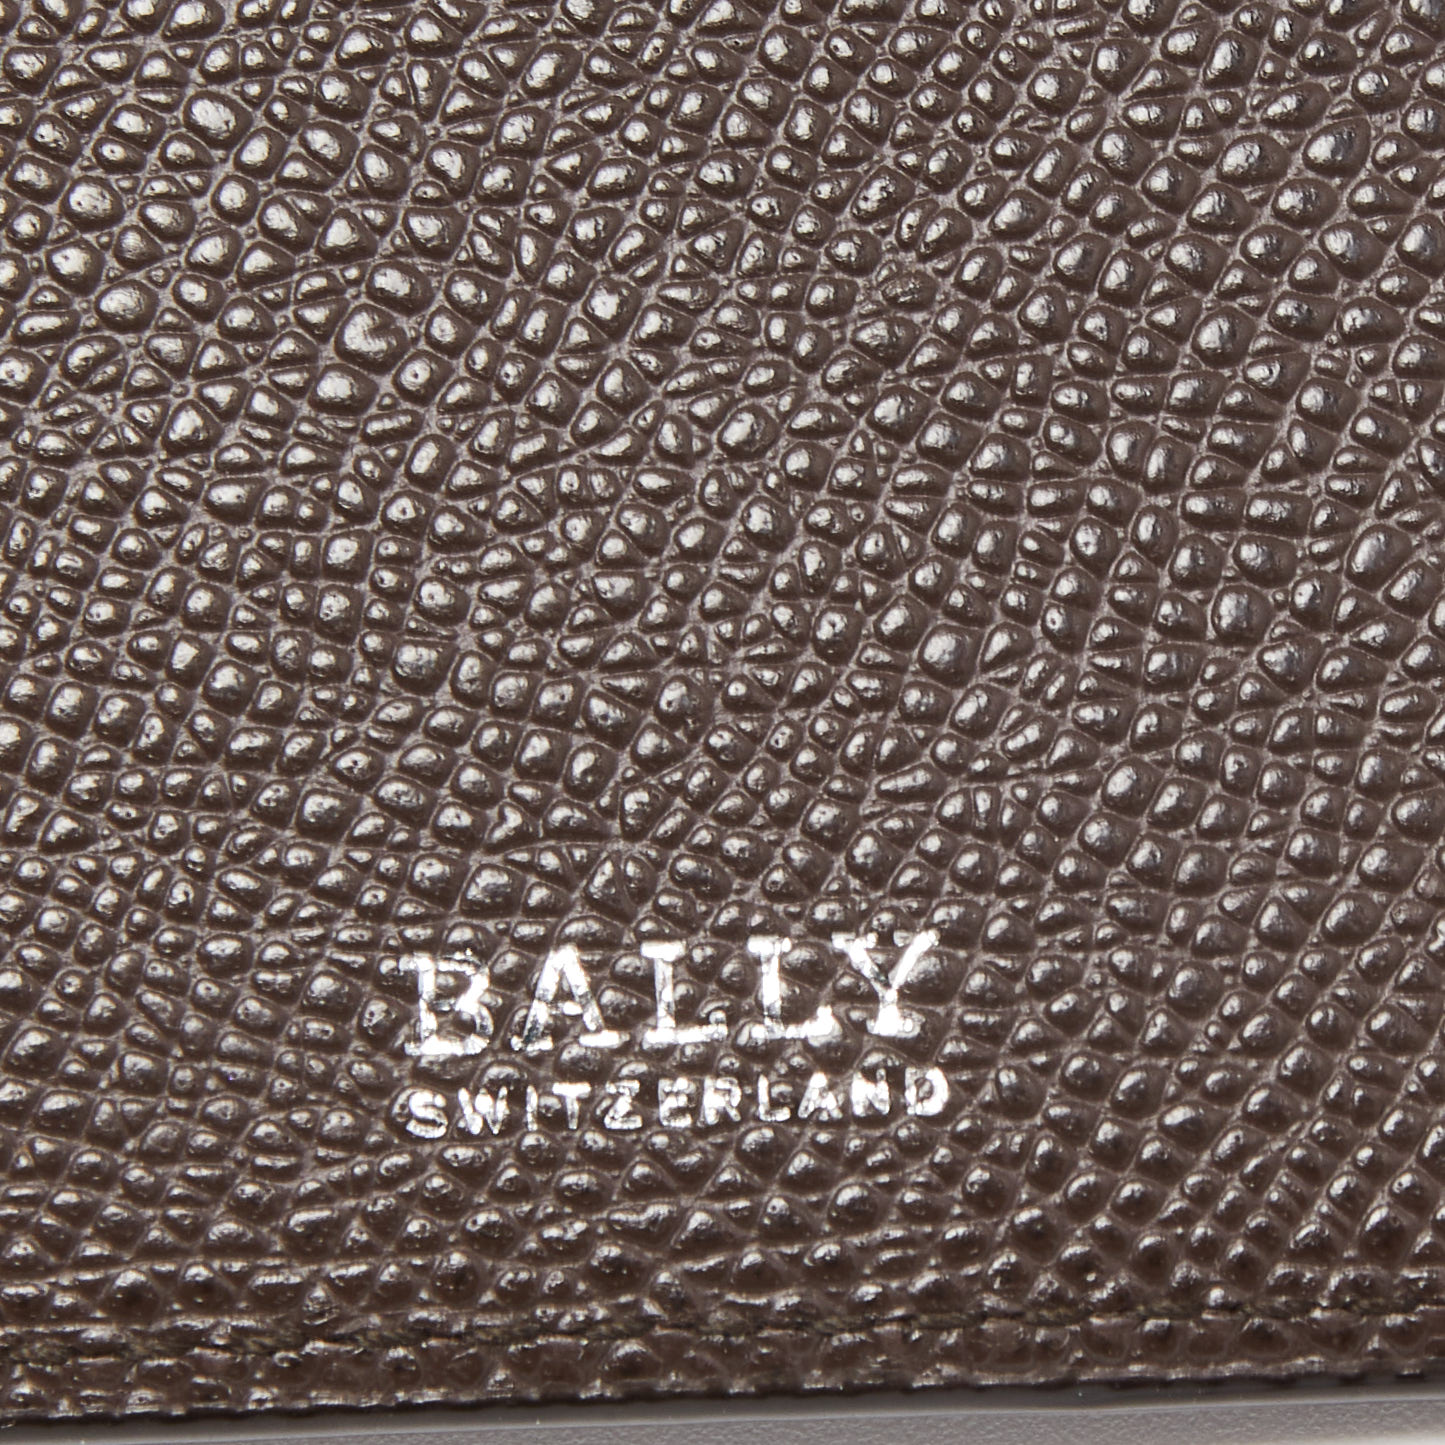 Bally Dark Brown Leather Stripe Bifold Wallet